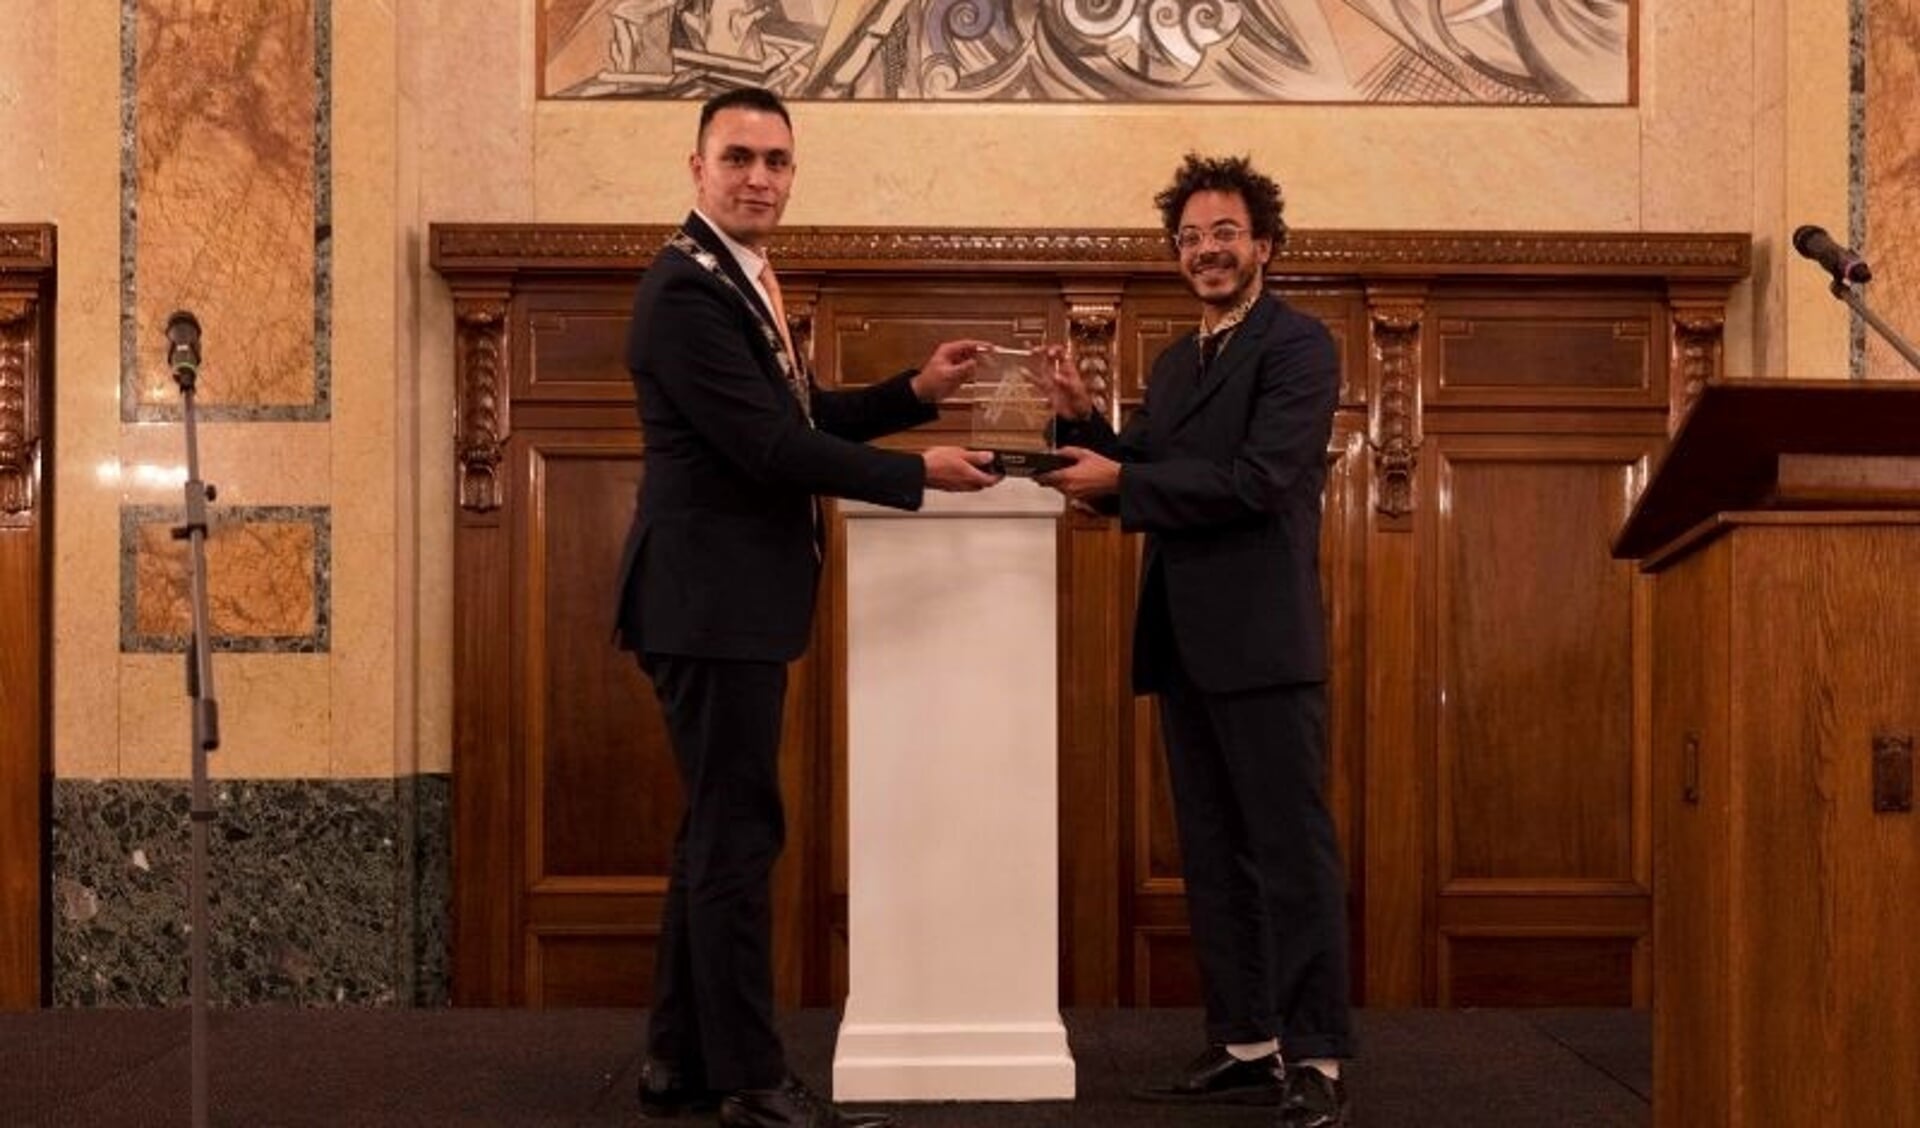 Locoburgemeester Faouzi Achbar overhandigde de prijs aan Raoul de Jong, een die de bekroning is van een waardevol auteurschap in en voor Rotterdam. Foto: pr